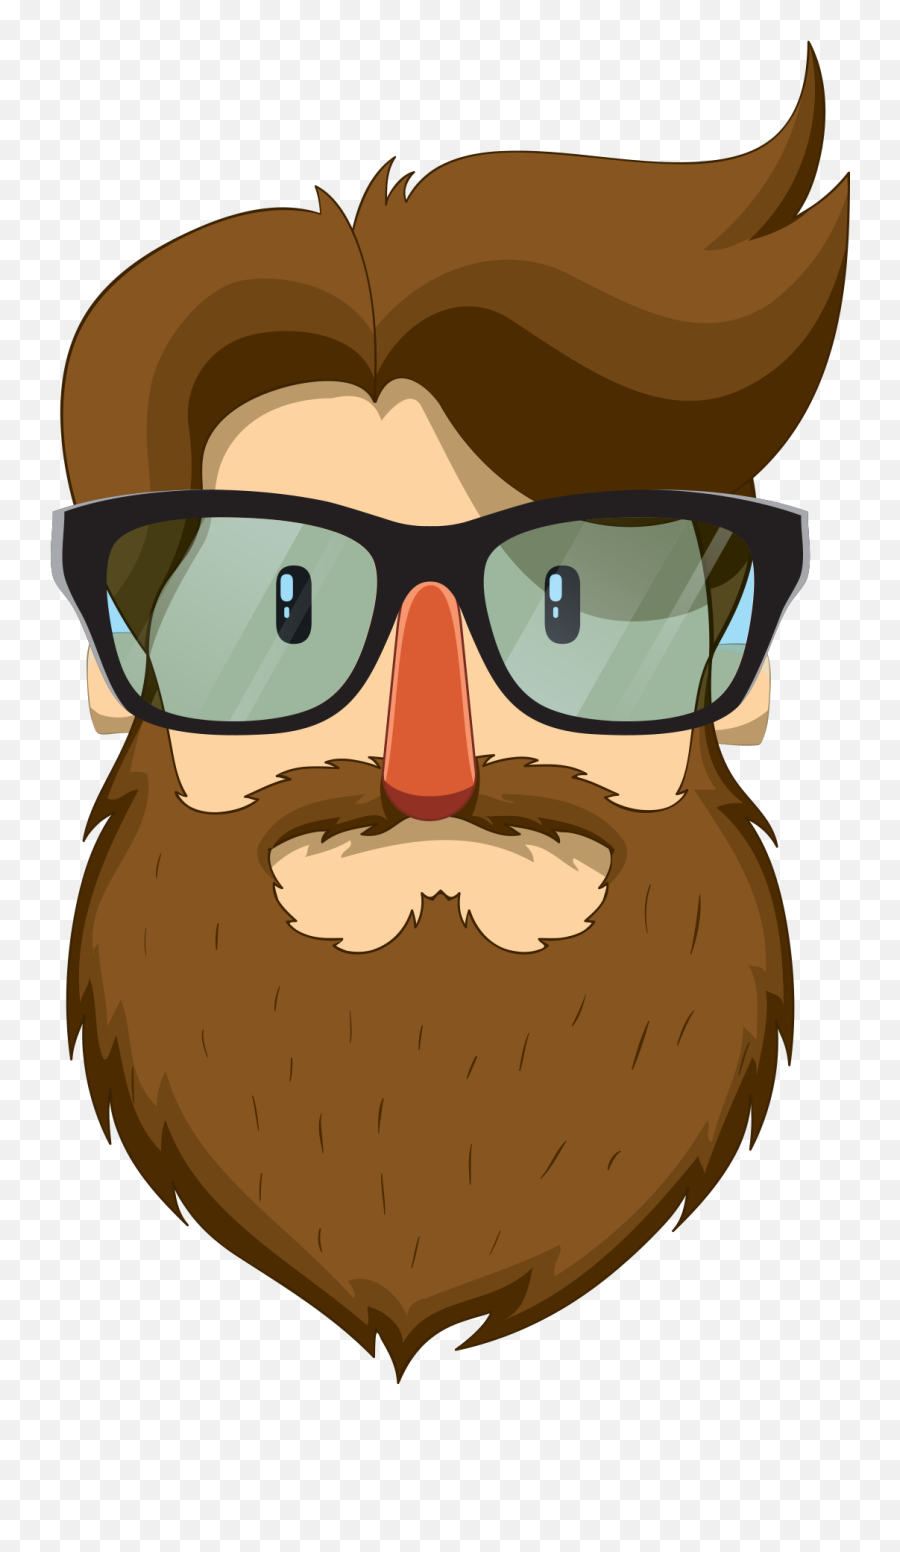 Beard Man Moustache Clip Art - Bearded Man With Glasses Png Man With Moustache And Beard Cartoon Emoji,Bearded Man Emoji